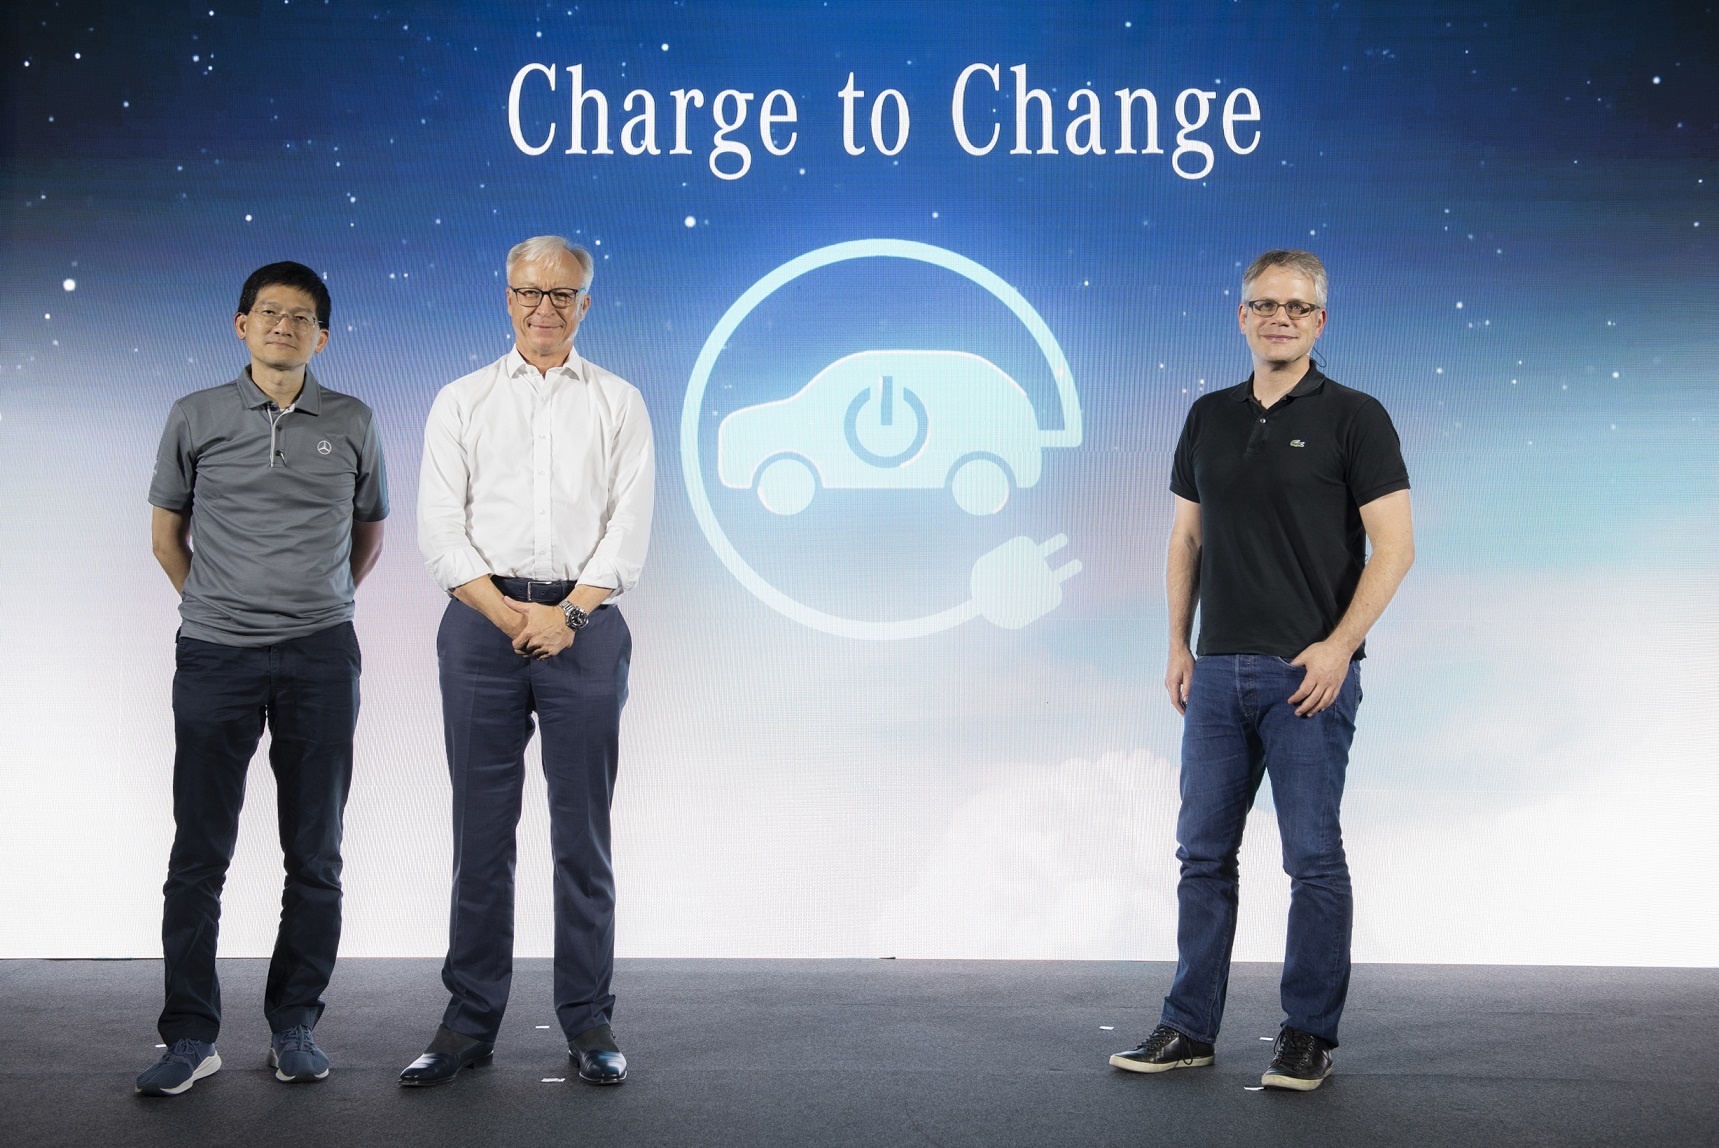 เมอร์เซเดส-เบนซ์ เปิดโครงการ Charge to Change ชวนผู้ใช้รถยนต์ปลั๊กอินไฮบริดทุกยี่ห้อร่วมกันชาร์จเพื่อเปลี่ยนโลก